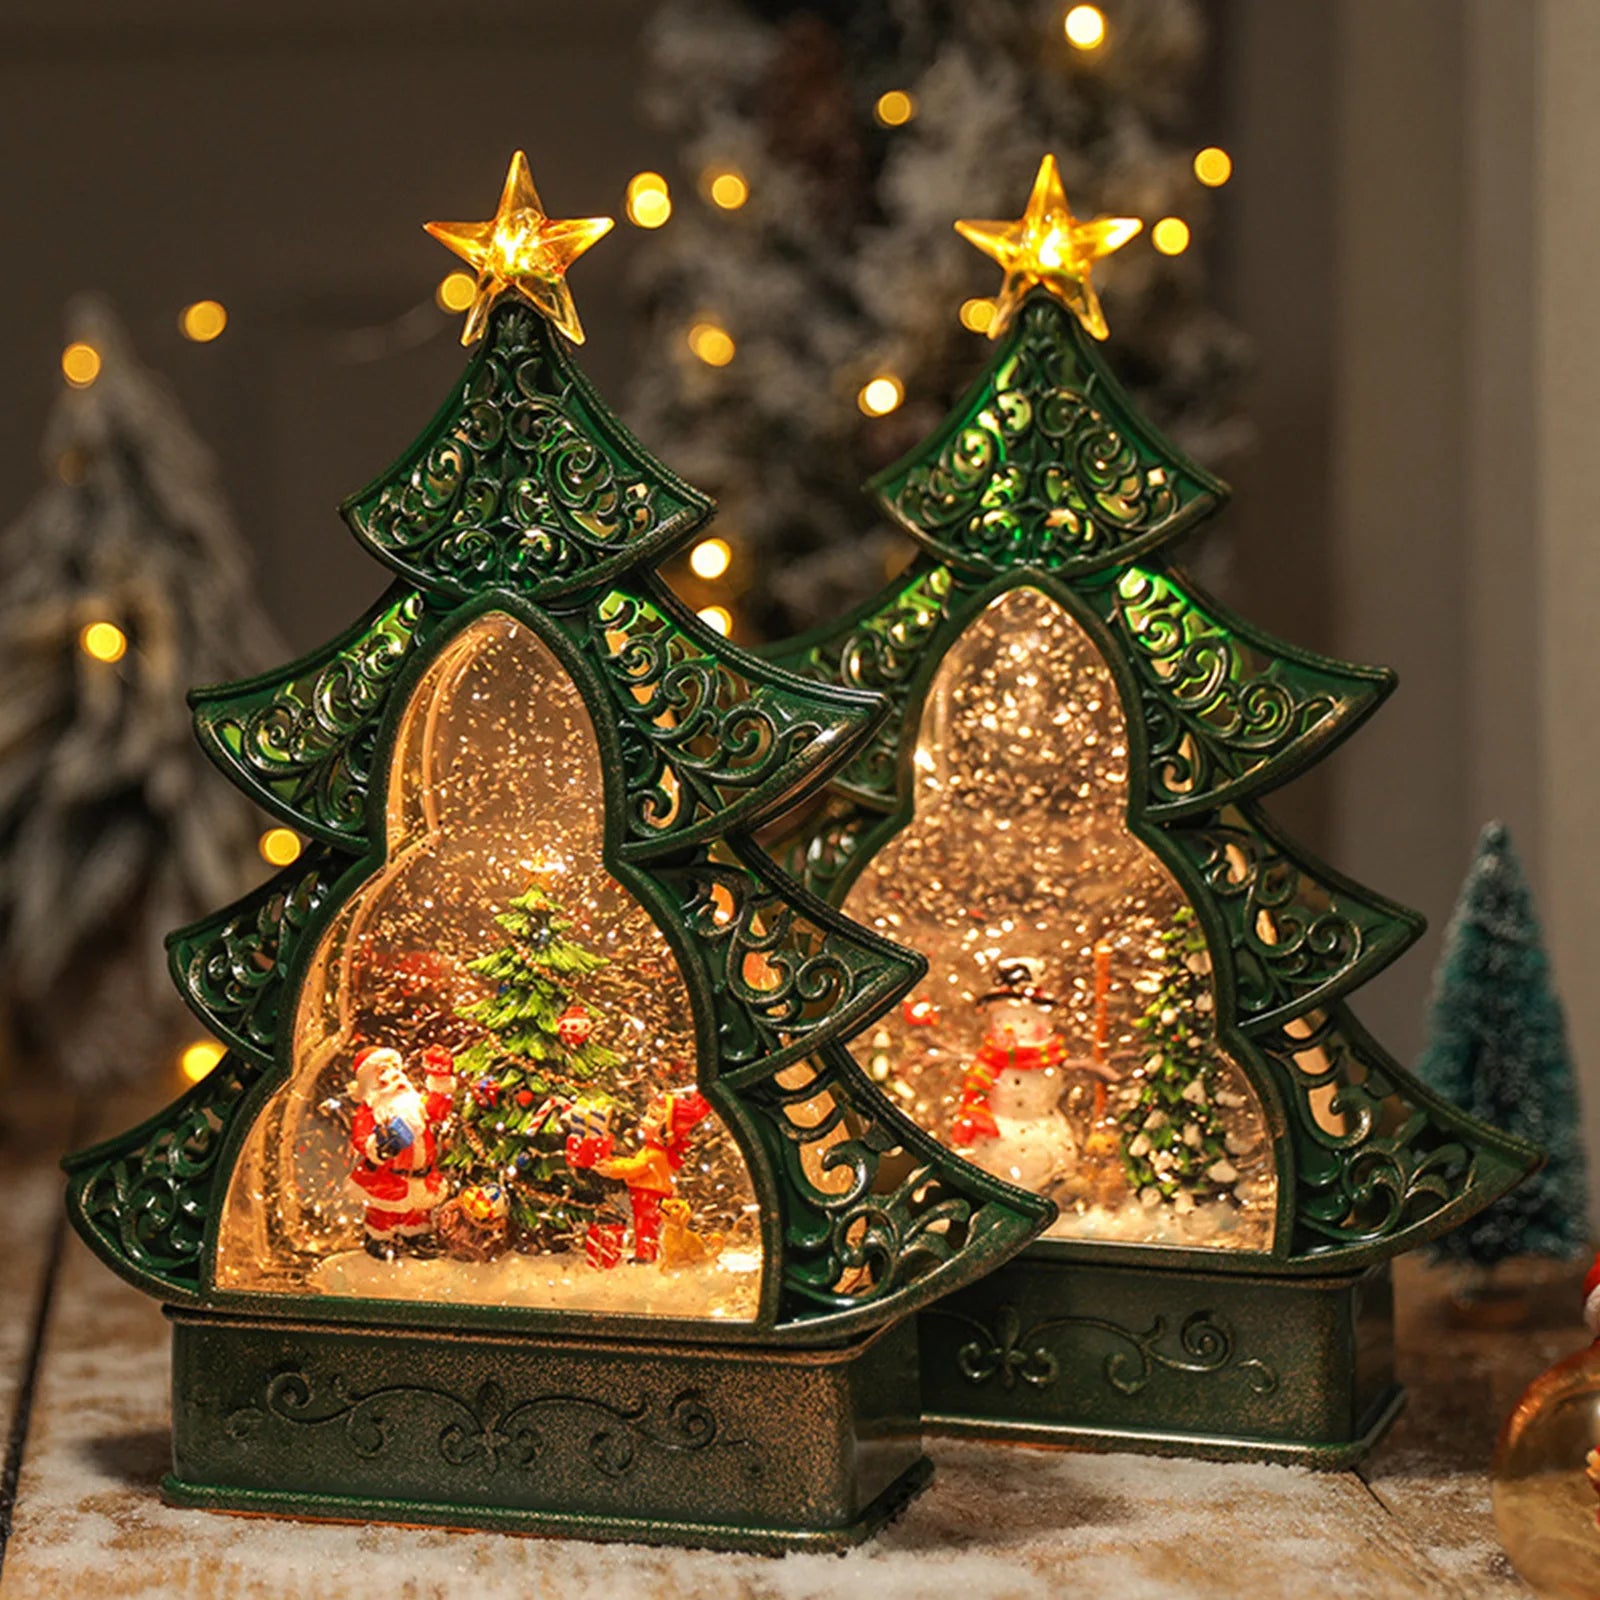 Kristalna Svetla za Dekoraciju Božićnog Drveta sa Zvezdom na Baterije - Ukras za Dom sa 8 Božićnih Pesama i Kreativnim Stolom, Originalni Božićni Pokloni i Dekoracija